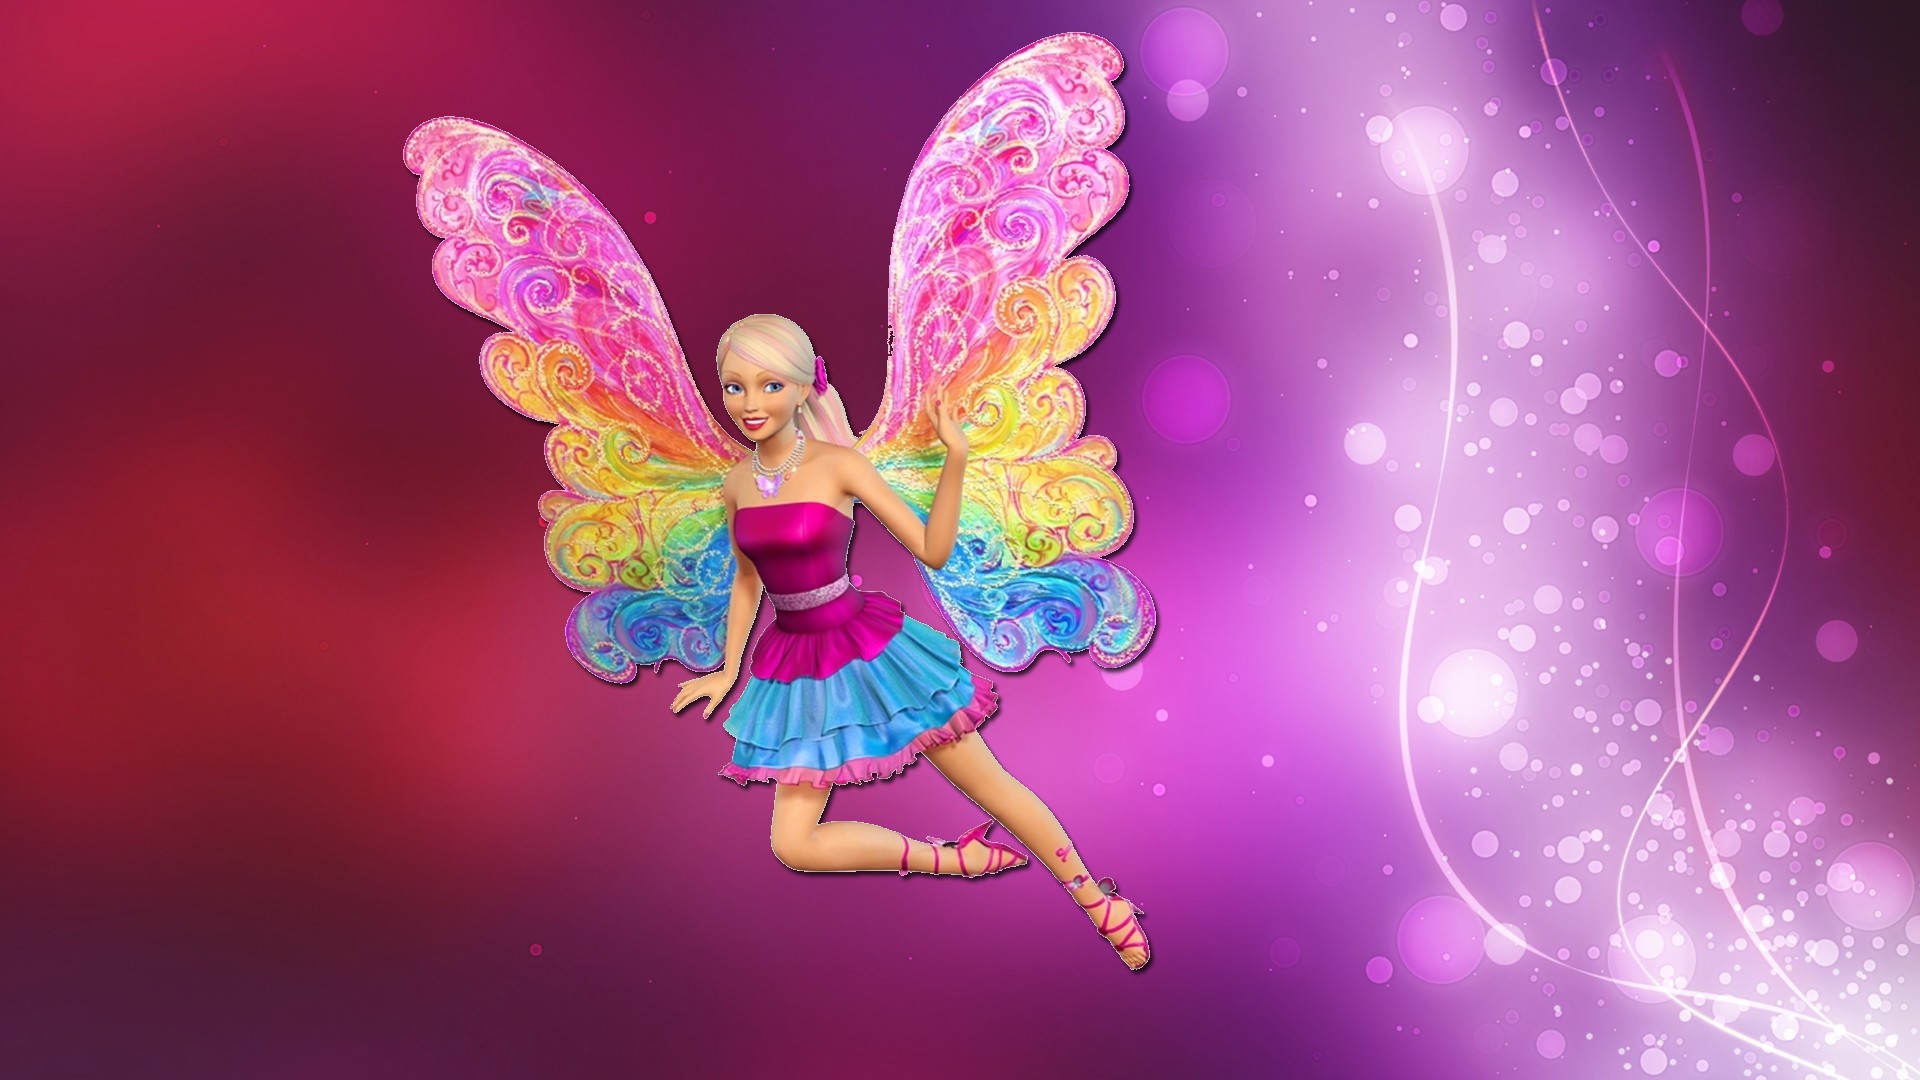 barbie wallpaper,erfundener charakter,rosa,puppe,mythische kreatur,engel